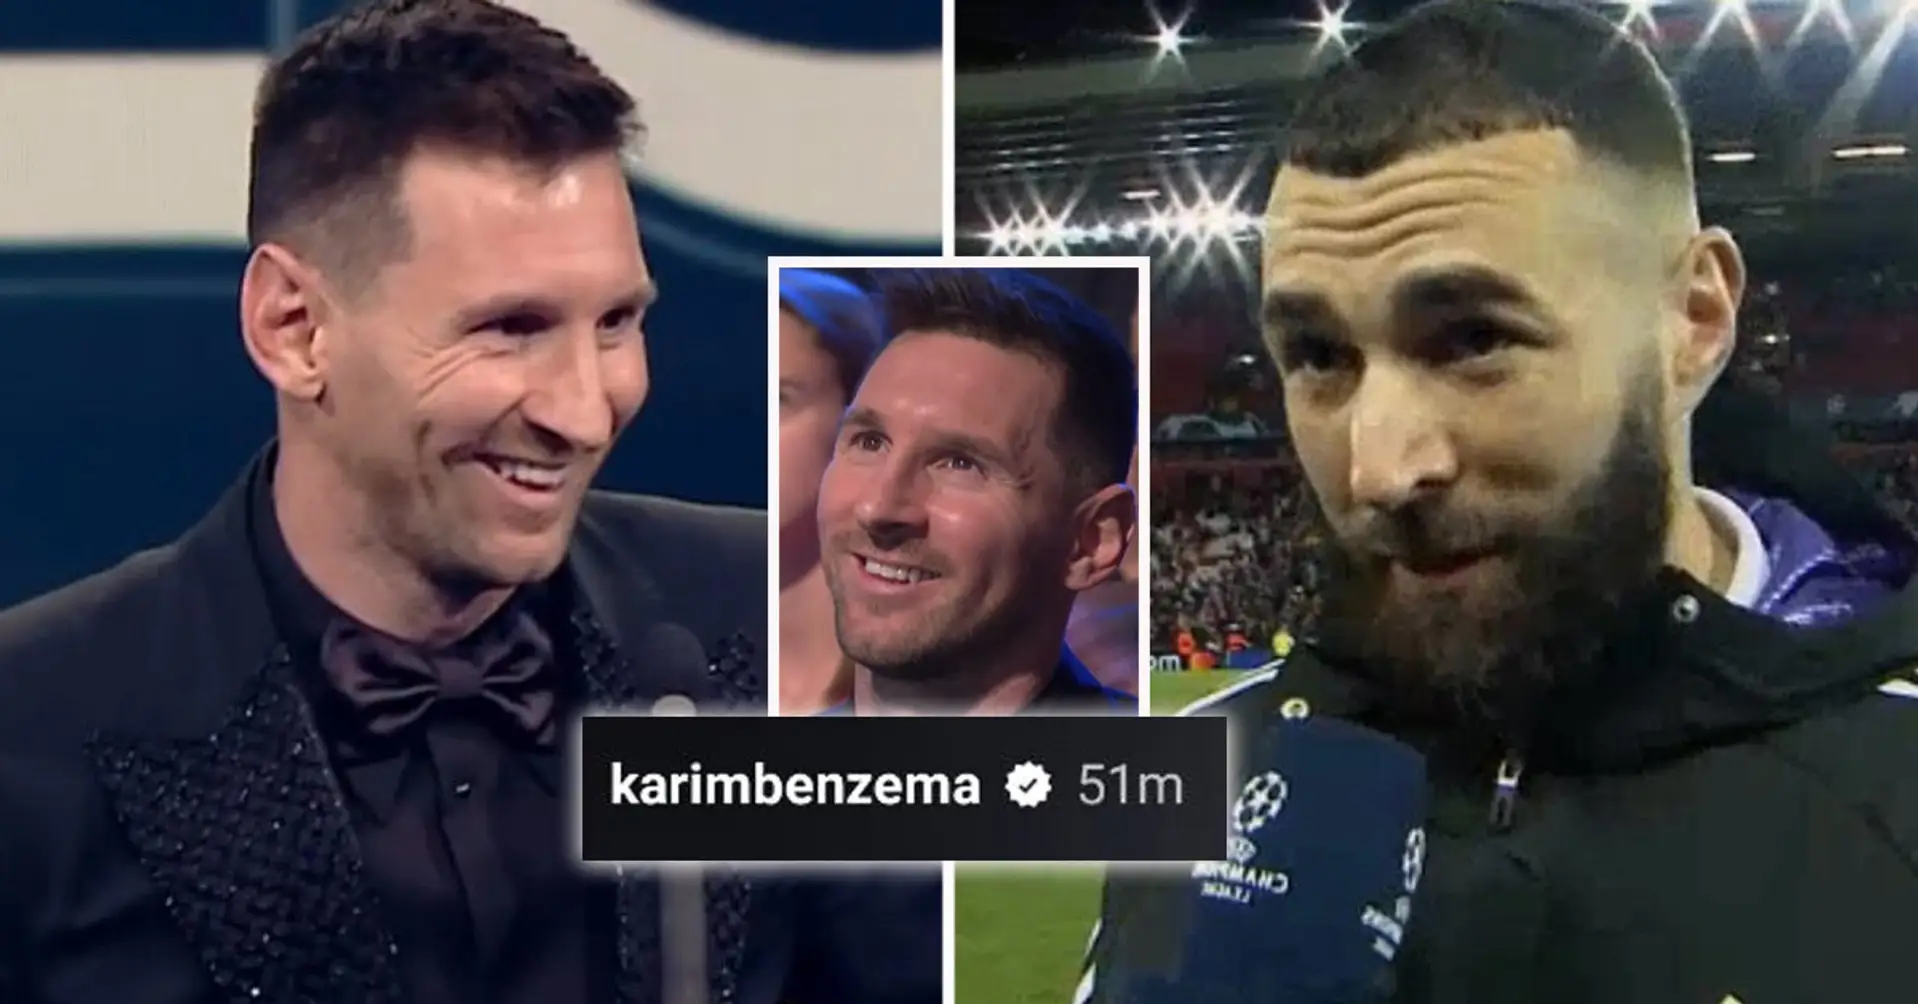 Er konnte nicht schweigen: Benzema postete einen geheimnisvollen Beitrag, 10 Minuten nachdem Messi 'The Best'-Preis gewonnen hatte